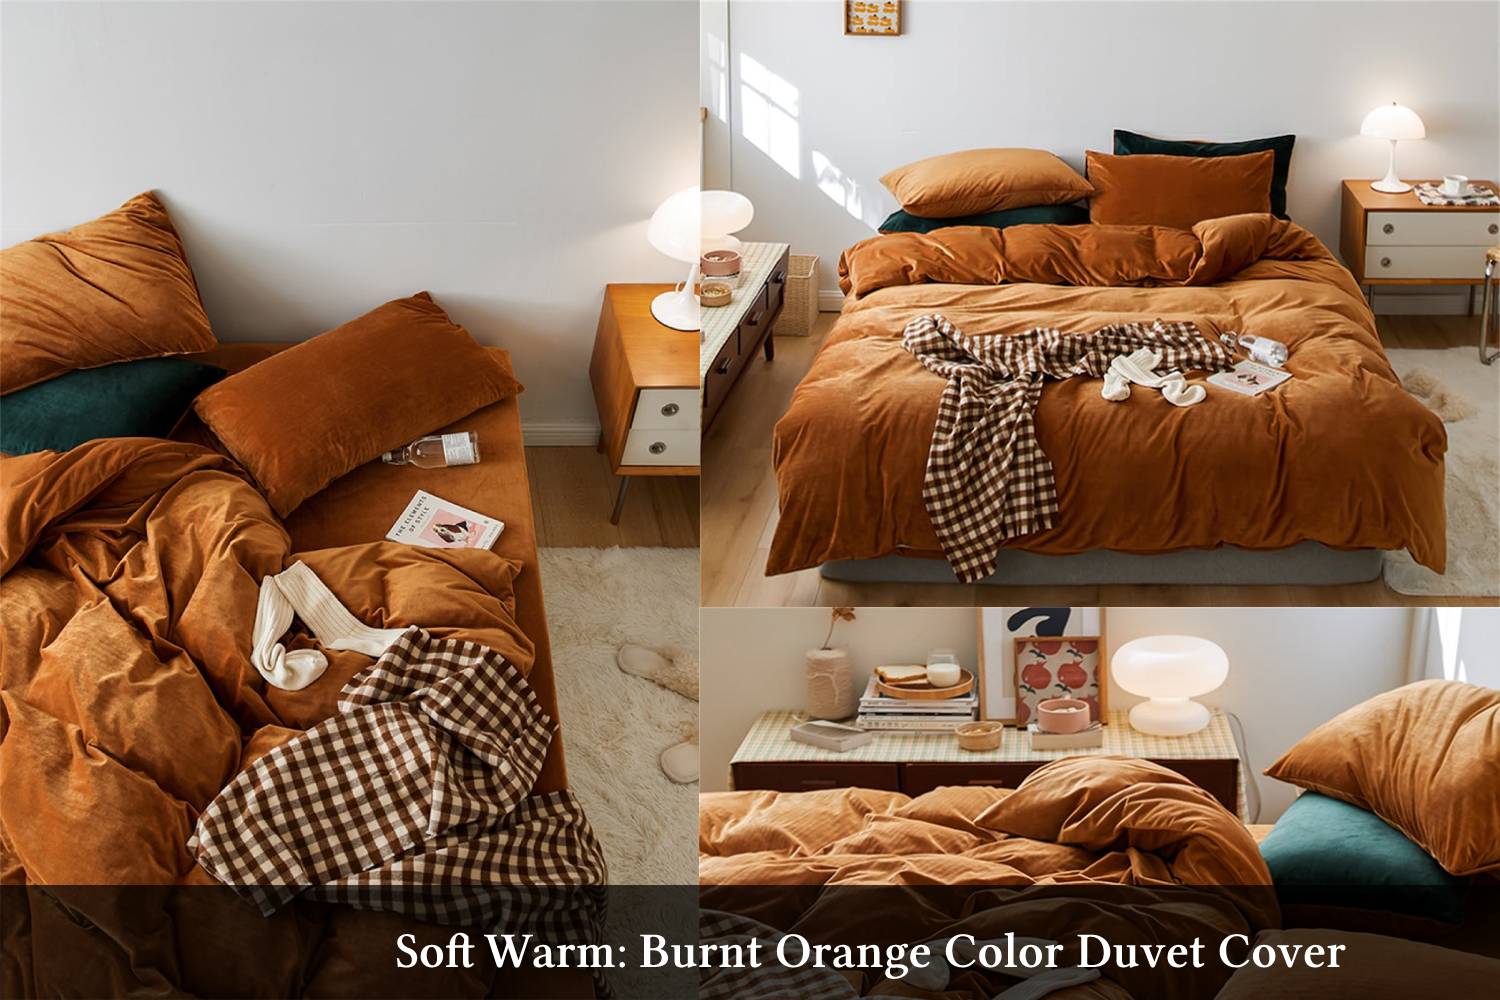 Soft warm: Burnt orange color duvet cover